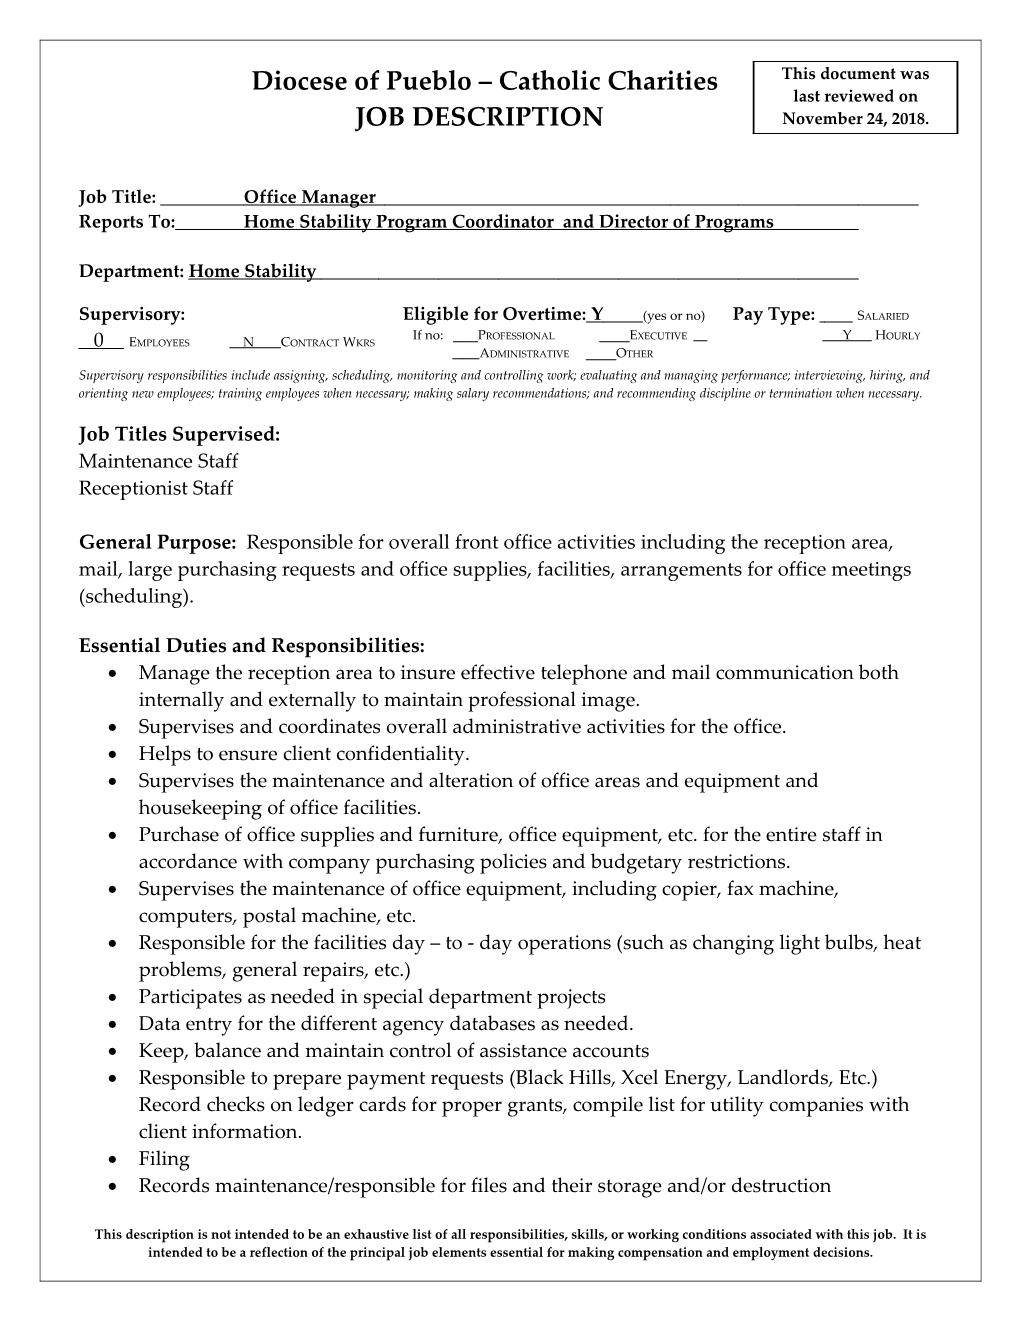 JD - Blank Job Description - NALC (A0209069)